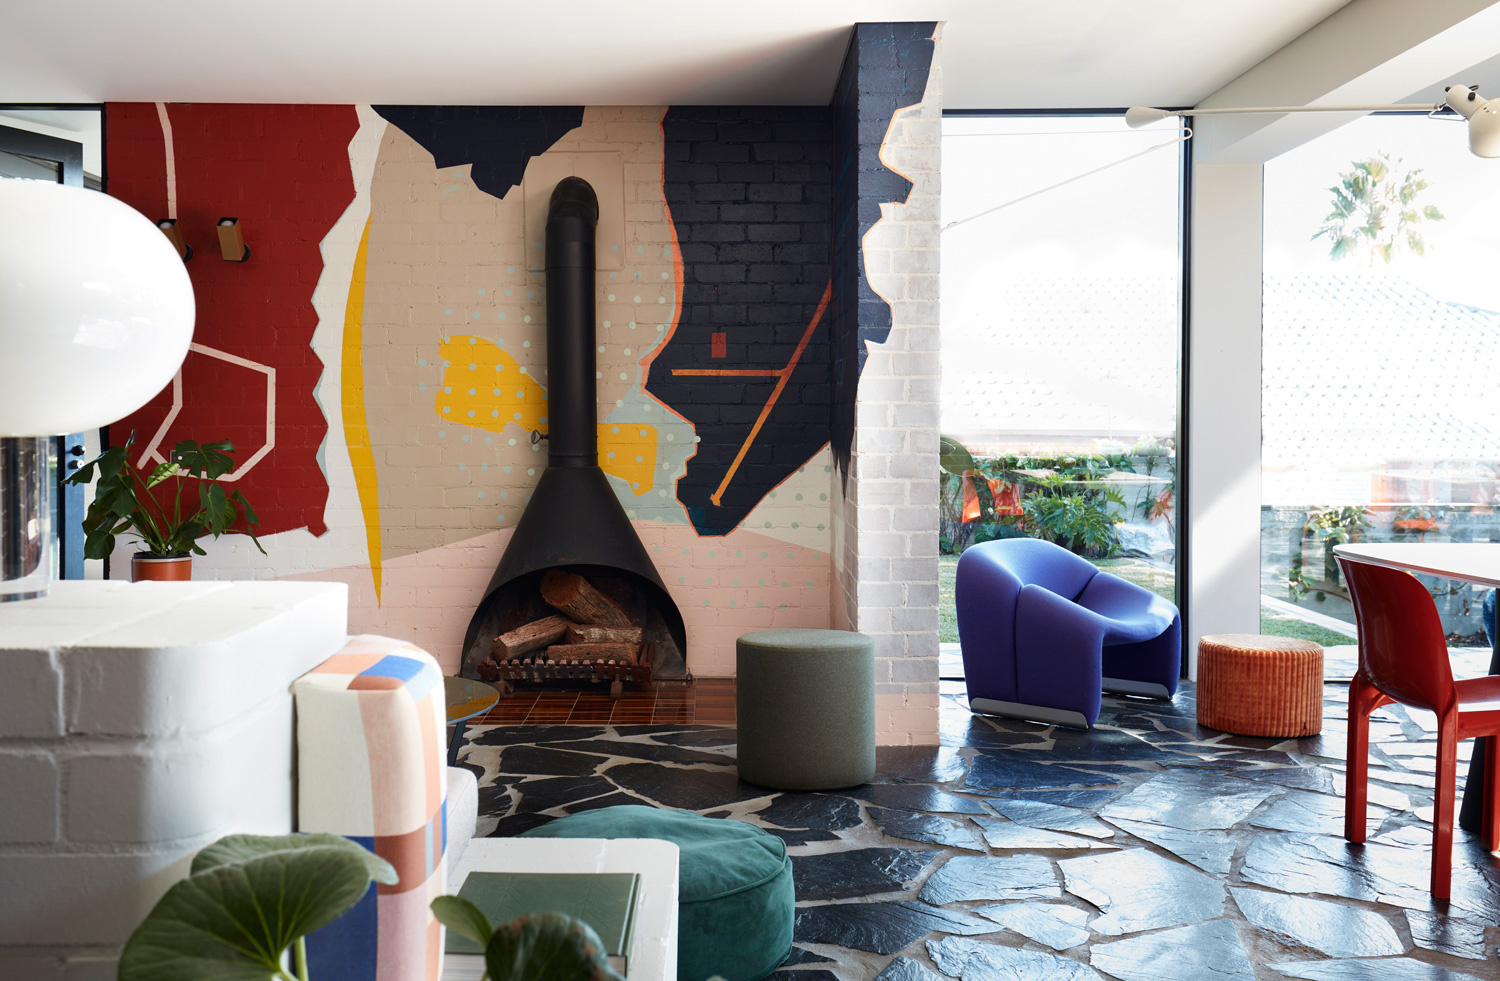 Không gian rực rỡ sắc màu này được thiết kế bởi Amber Road Studio, với sàn nhà lát bằng đá tự nhiên với sự tương phản của hai gam màu đen - trắng, phối hợp cùng những sắc màu nội thất xung quanh cho cái nhìn phóng khoáng, ấn tượng.